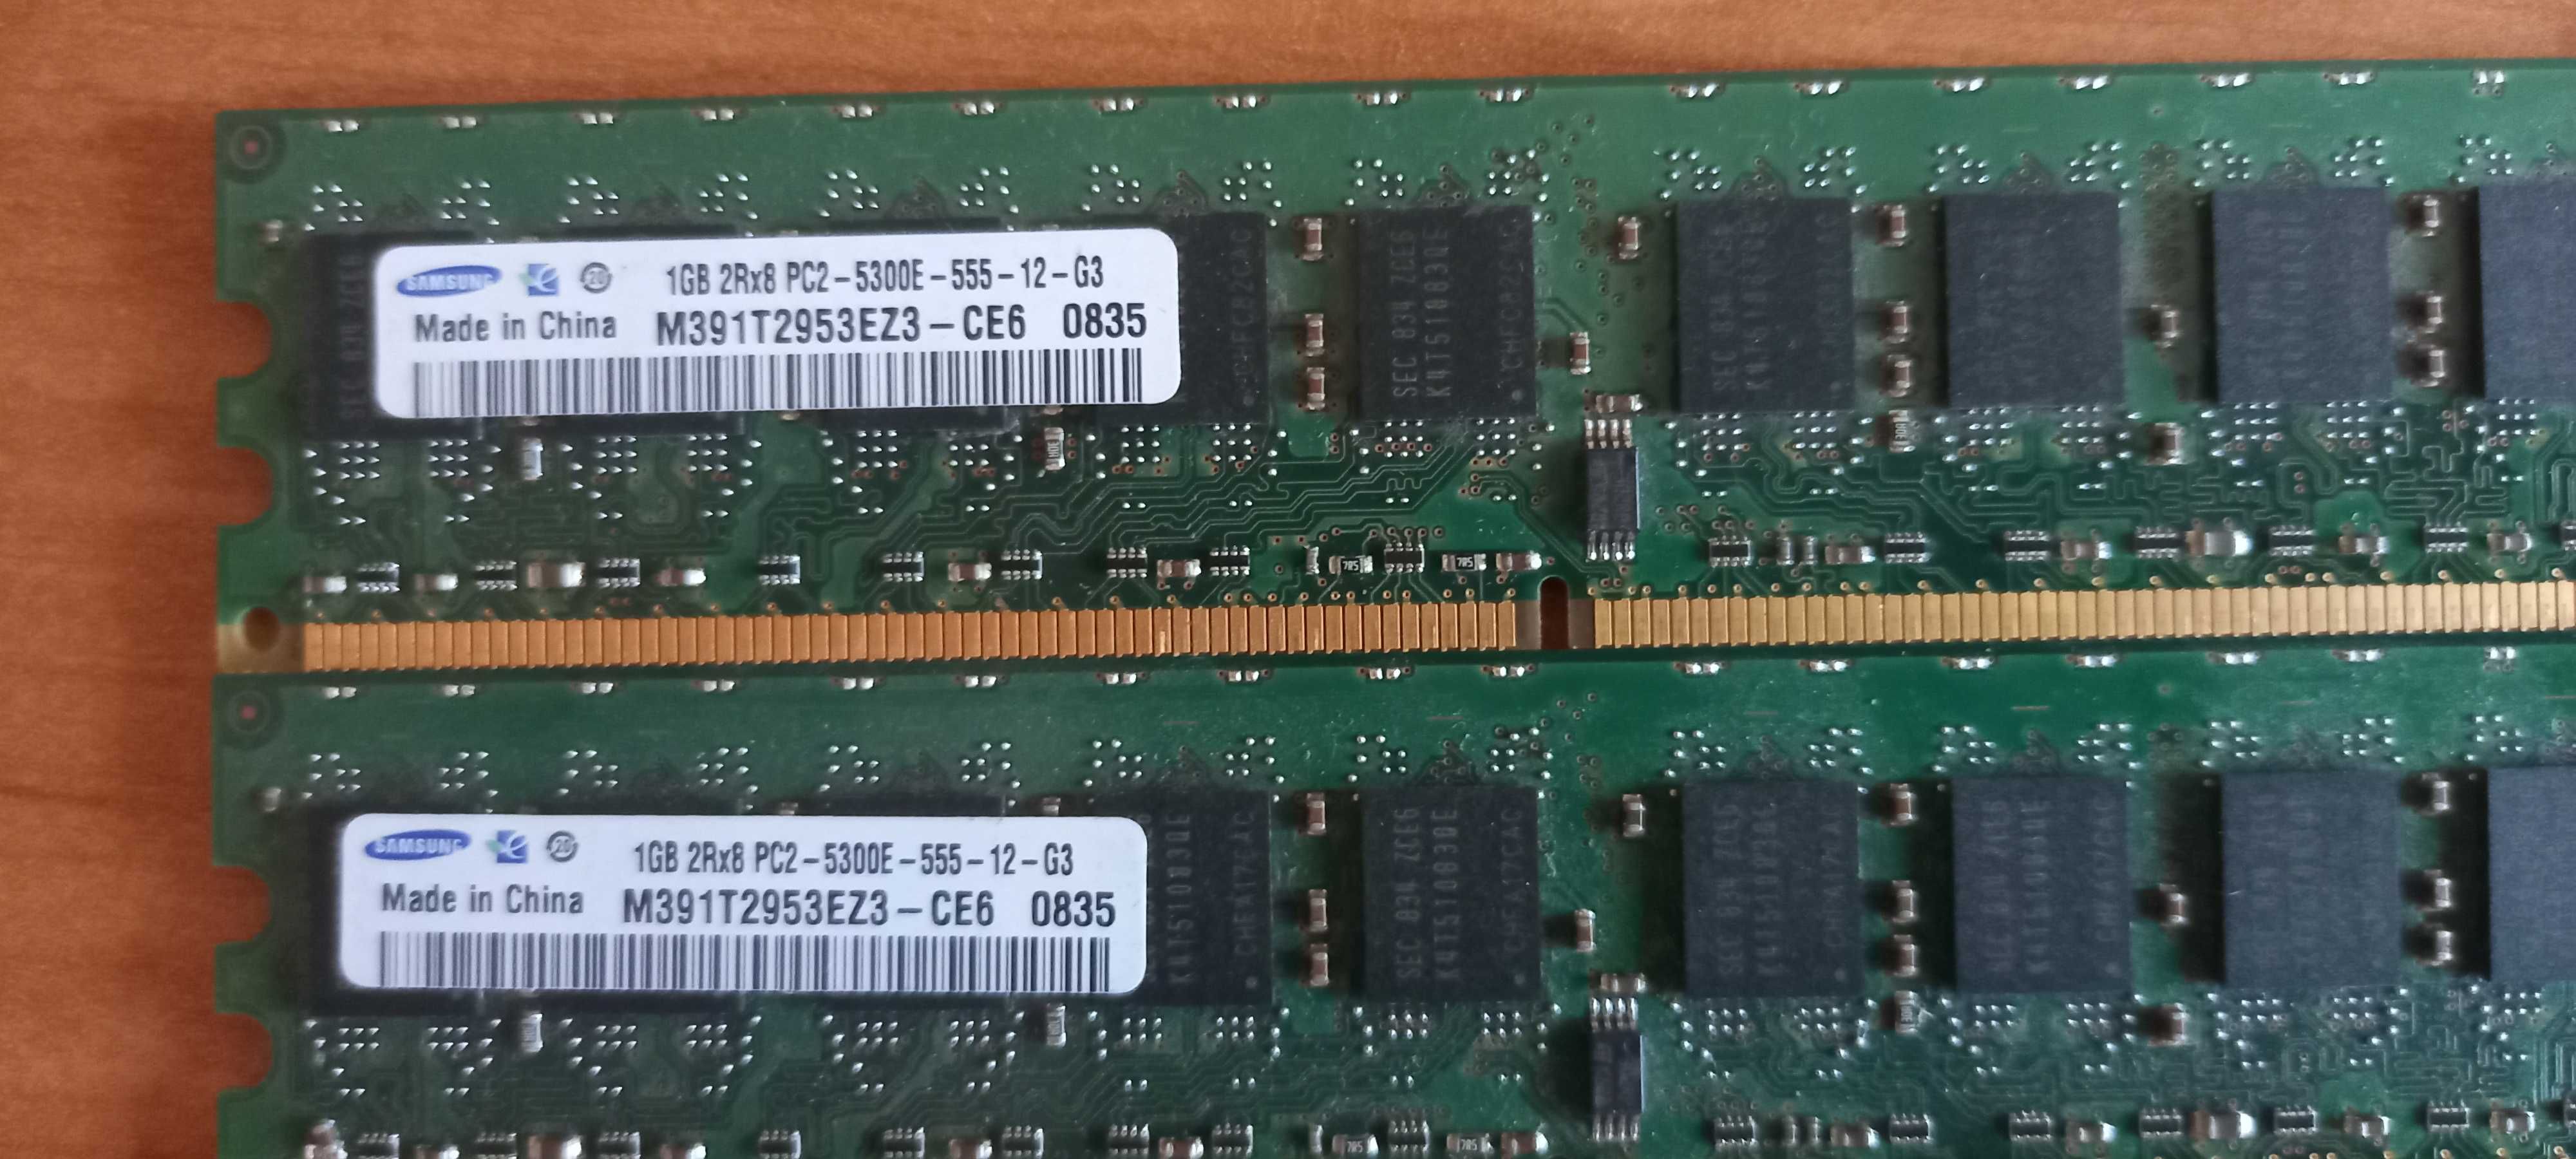 Pamięć Ram 1Gb x 4 sztuki 2Rx8 PC2 5300E DDR2